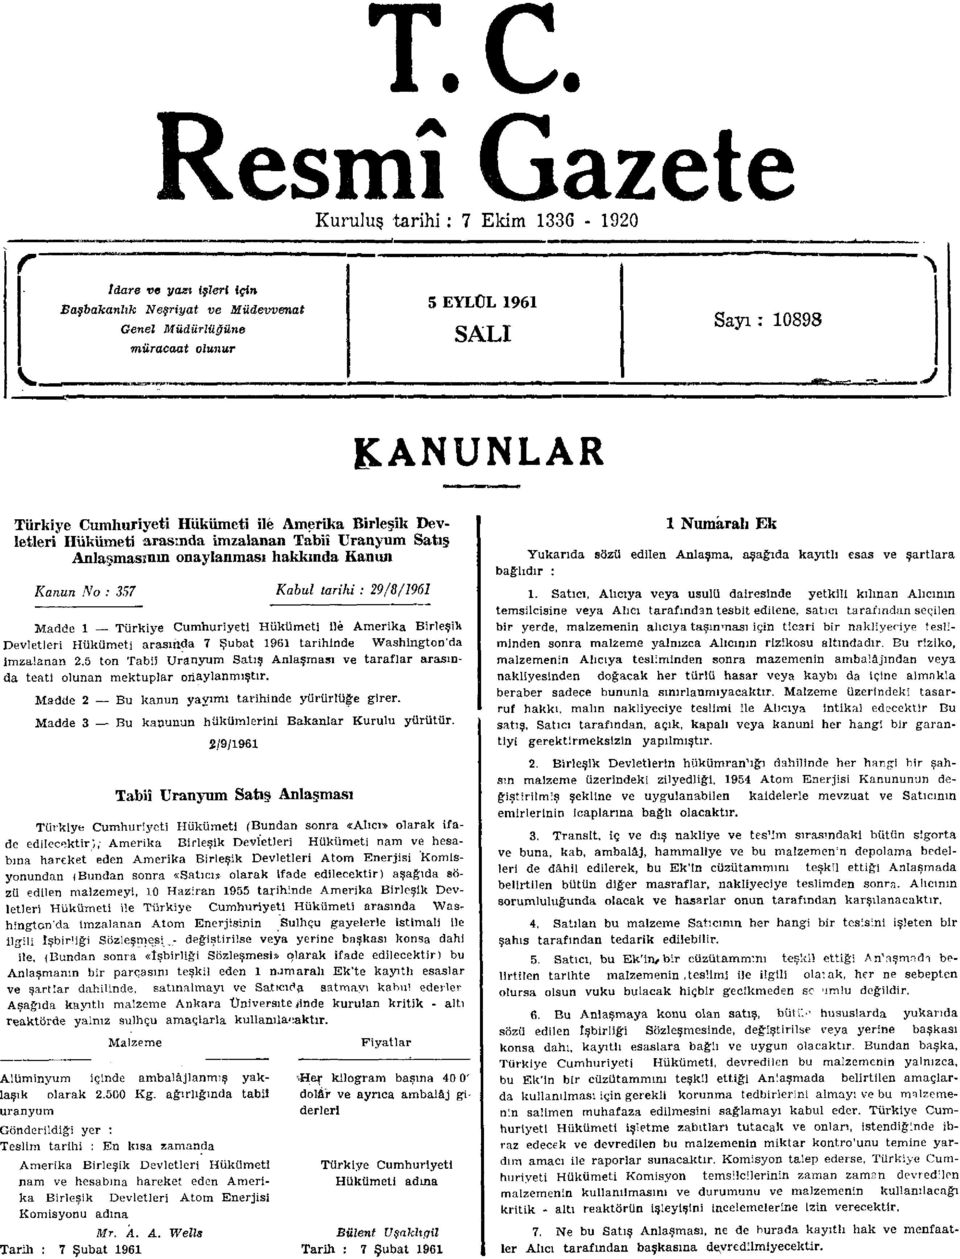 Cumhuriyeti Hükümeti ile Amerika Birleşik Devletleri Hükümeti arasında 7 Şubat 1961 tarihinde Washington'da imzalanan 2,5 ton Tabiî Uranyum Satış Anlaşması ve taraflar arasında teati olunan mektuplar